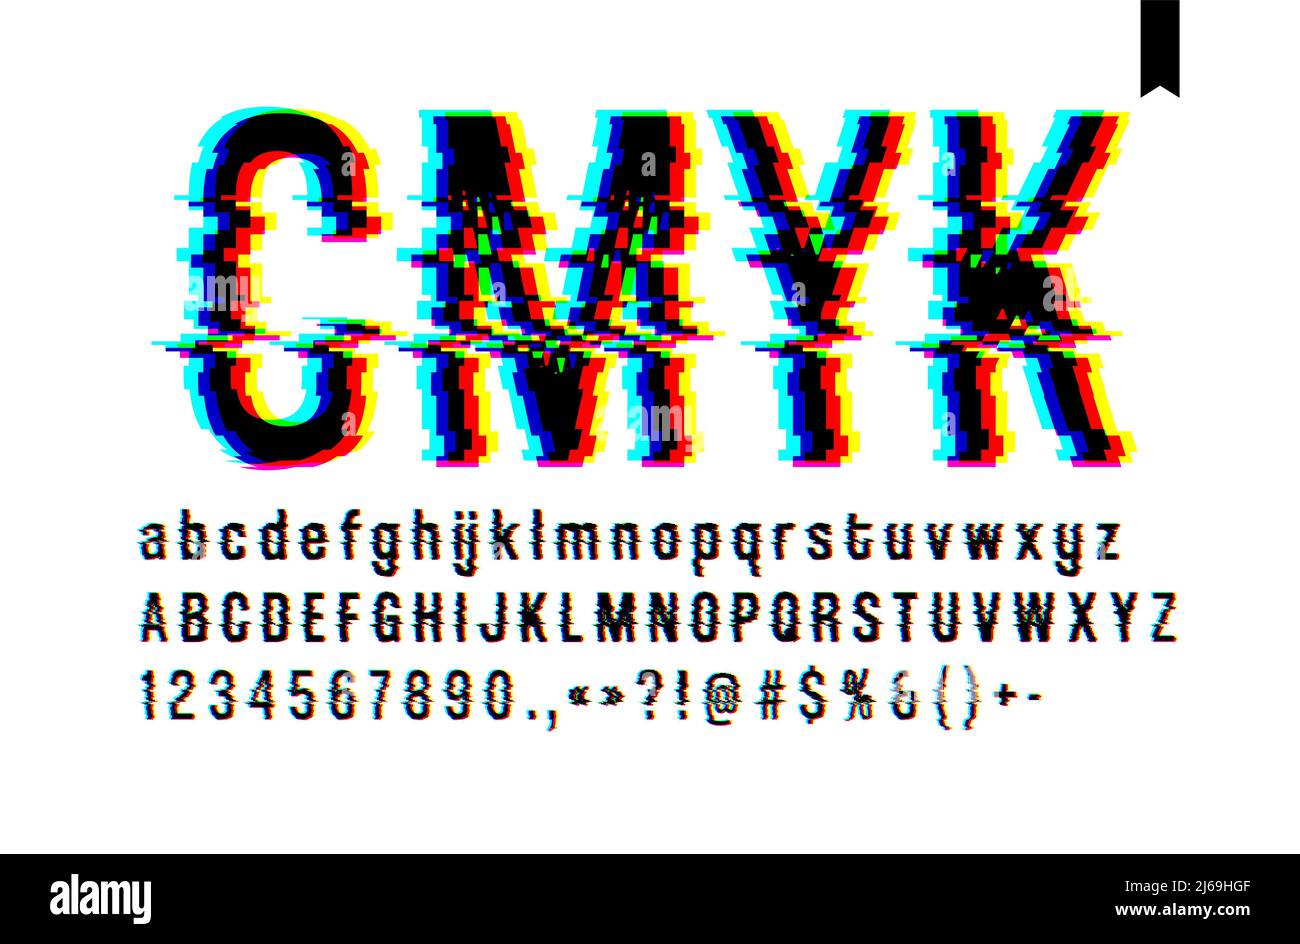 Moderne Stil verzerrte Glitch-Schrift, Mischung blau rosa und gelb Kanal-Bildschirm defekt, Groß-und Kleinbuchstaben, nur auf einem hellen Hintergrund Stock Vektor